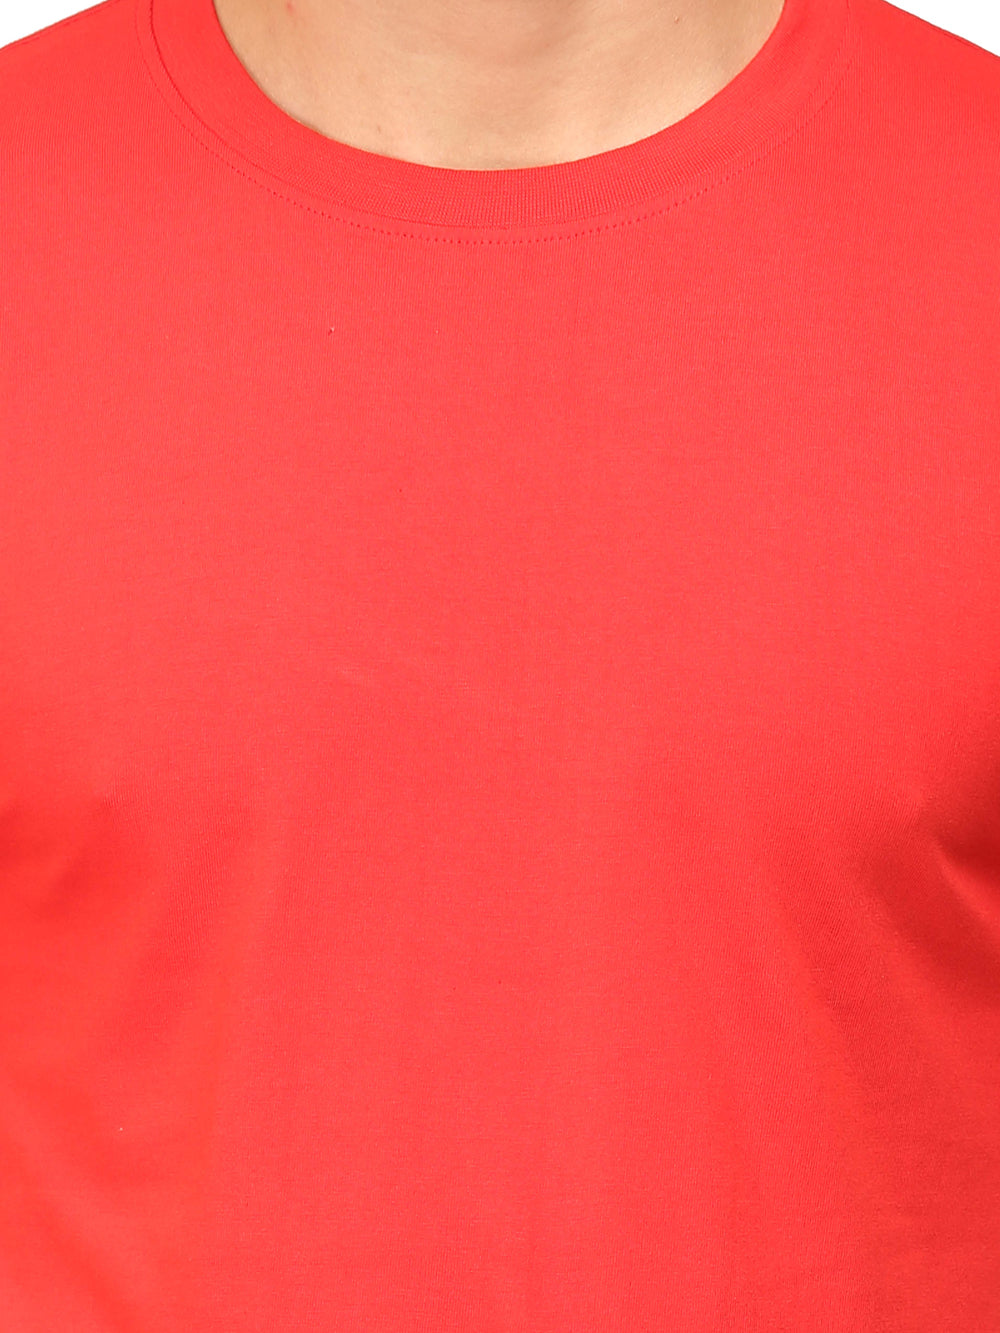 Solids : Premium Red Unisex T -shirt